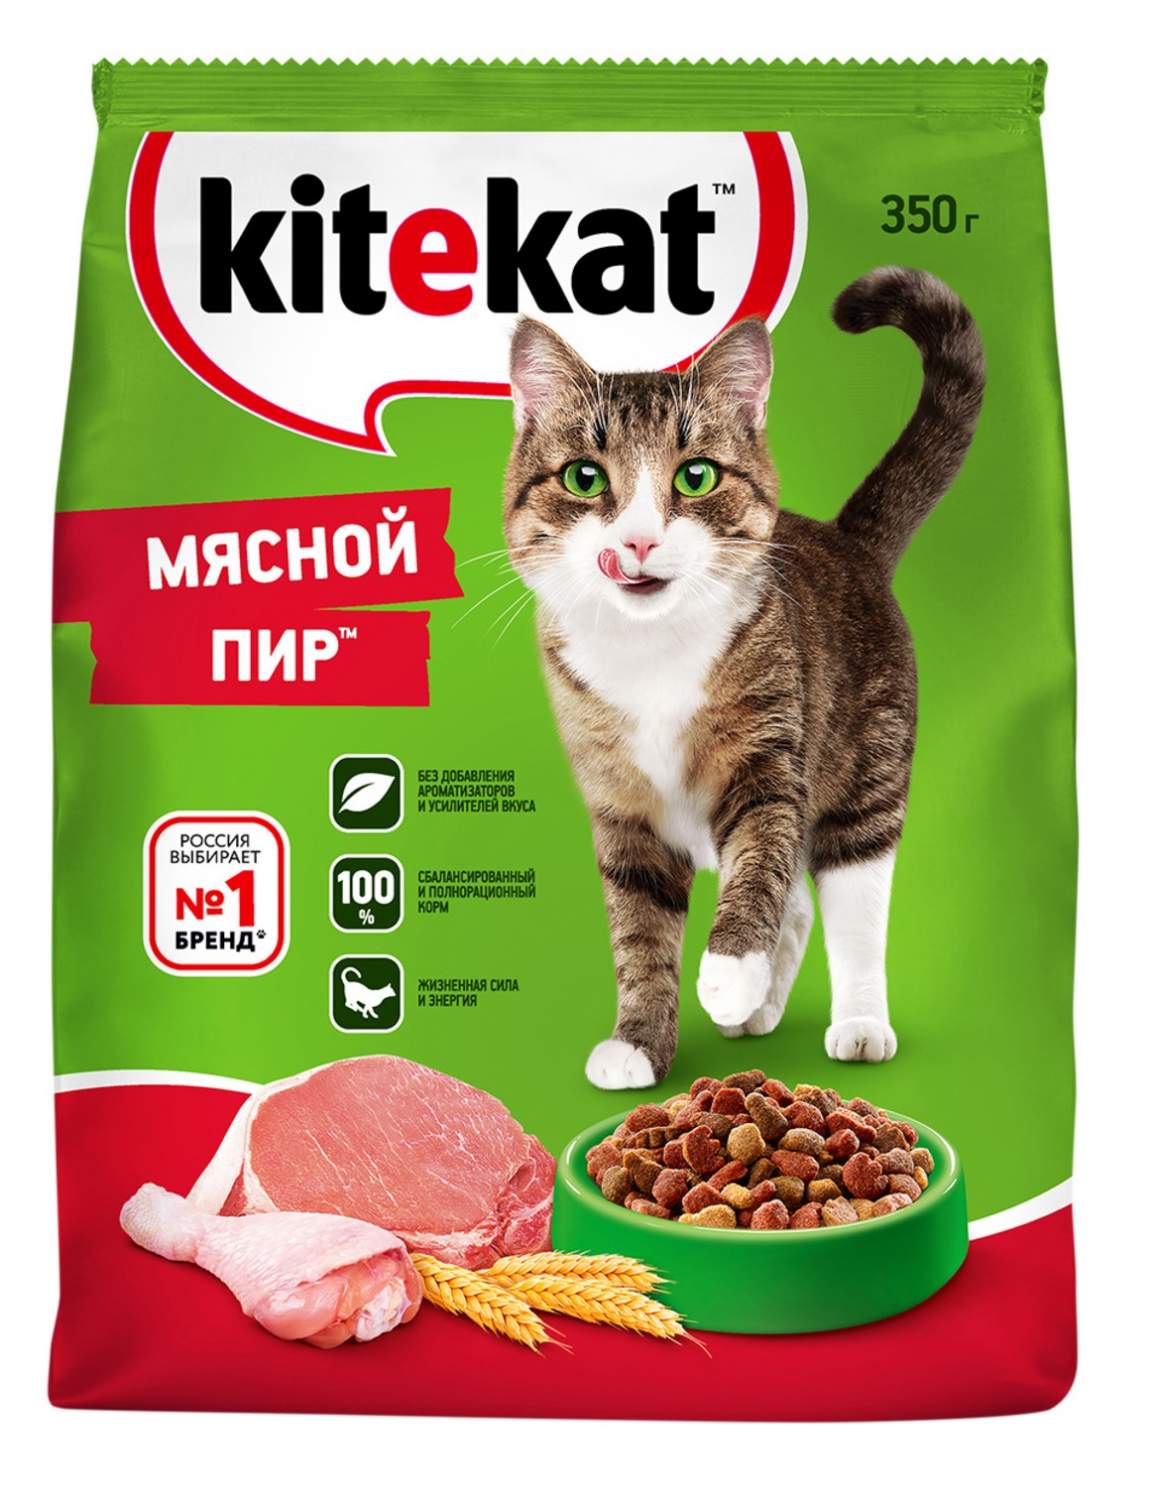 Сухой корм для кошек Kitekat, мясной пир, 0,35кг - отзывы покупателей на  маркетплейсе Мегамаркет | Артикул товара:100013200822